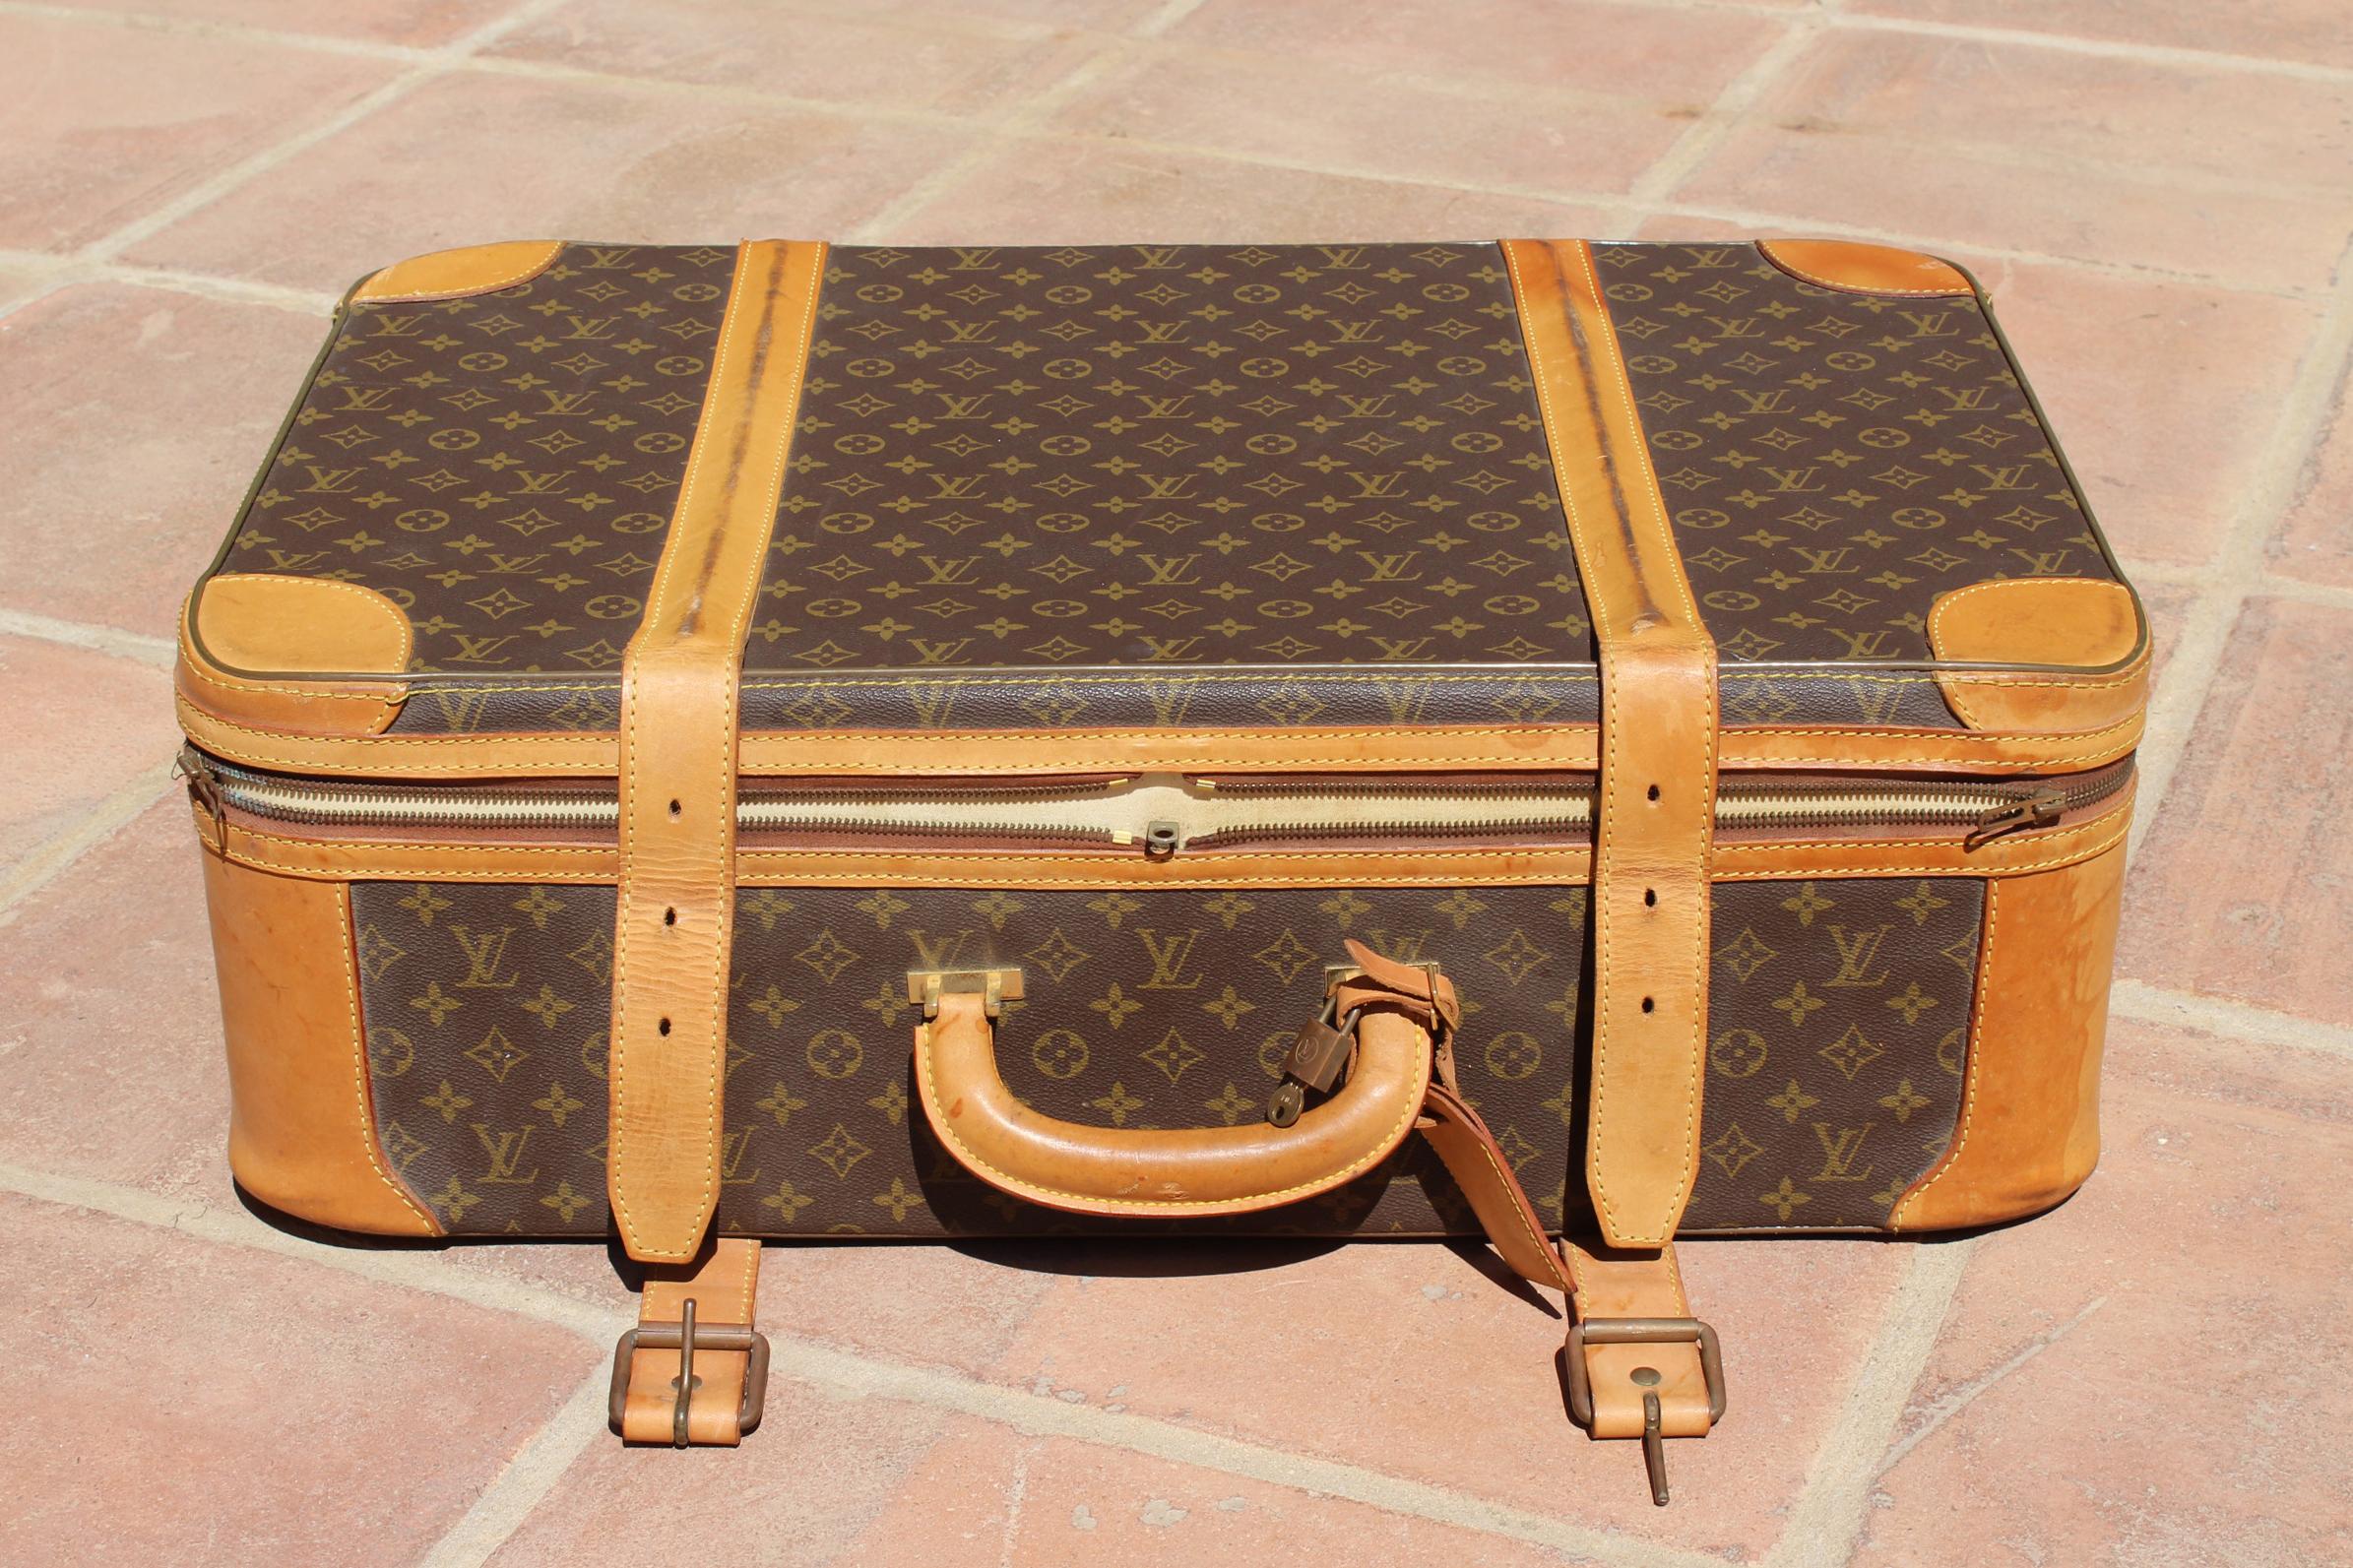 1980s vintage Louis Vuitton suitcase.